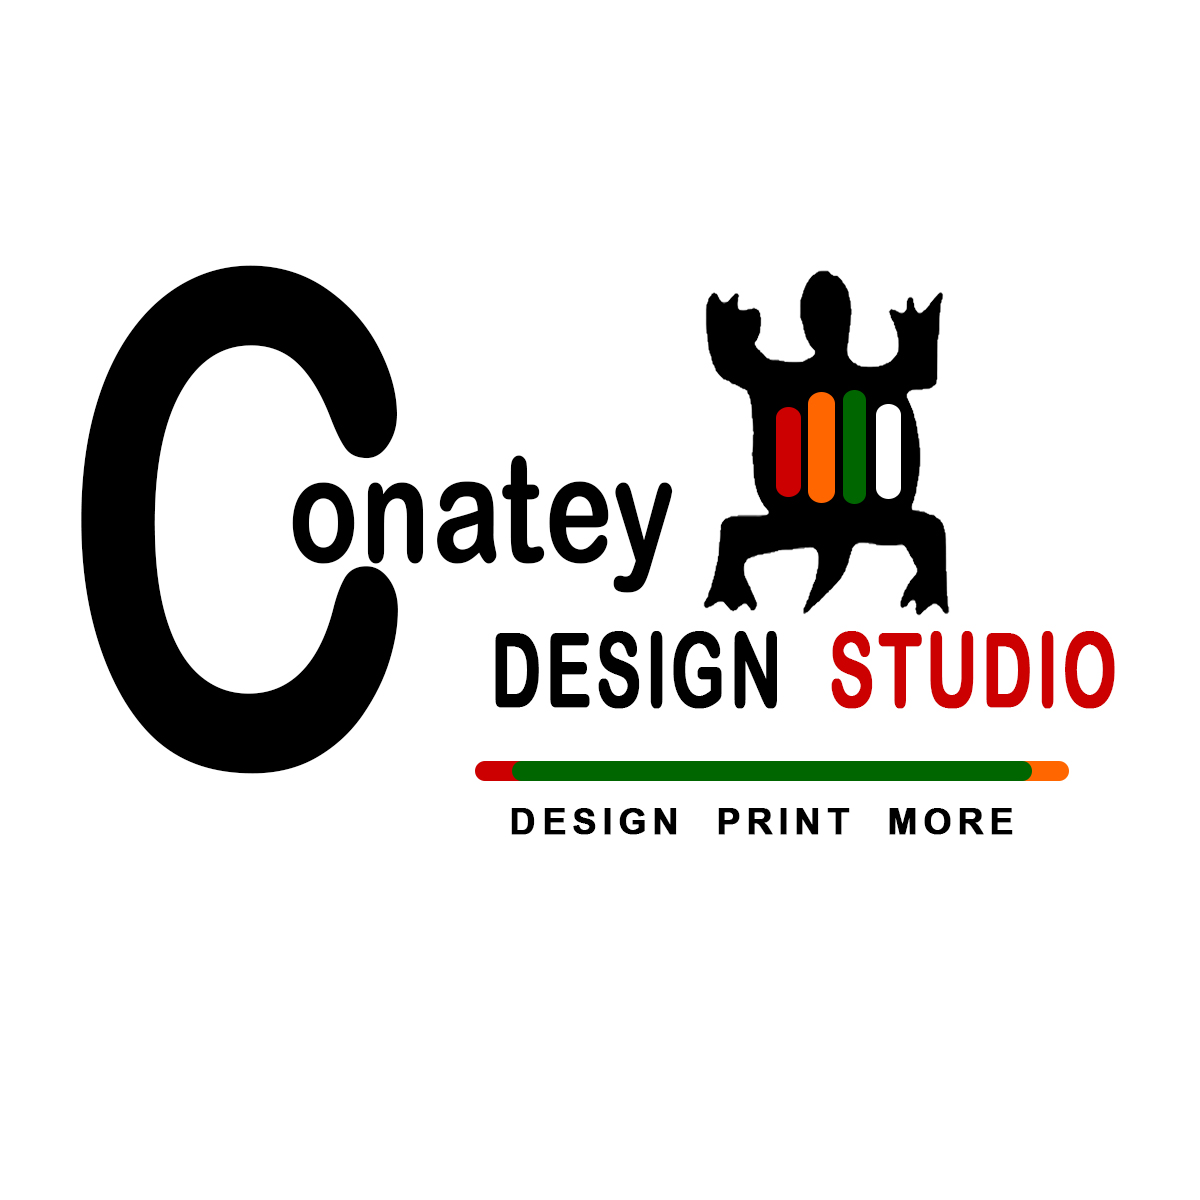 Conatey Design Studio